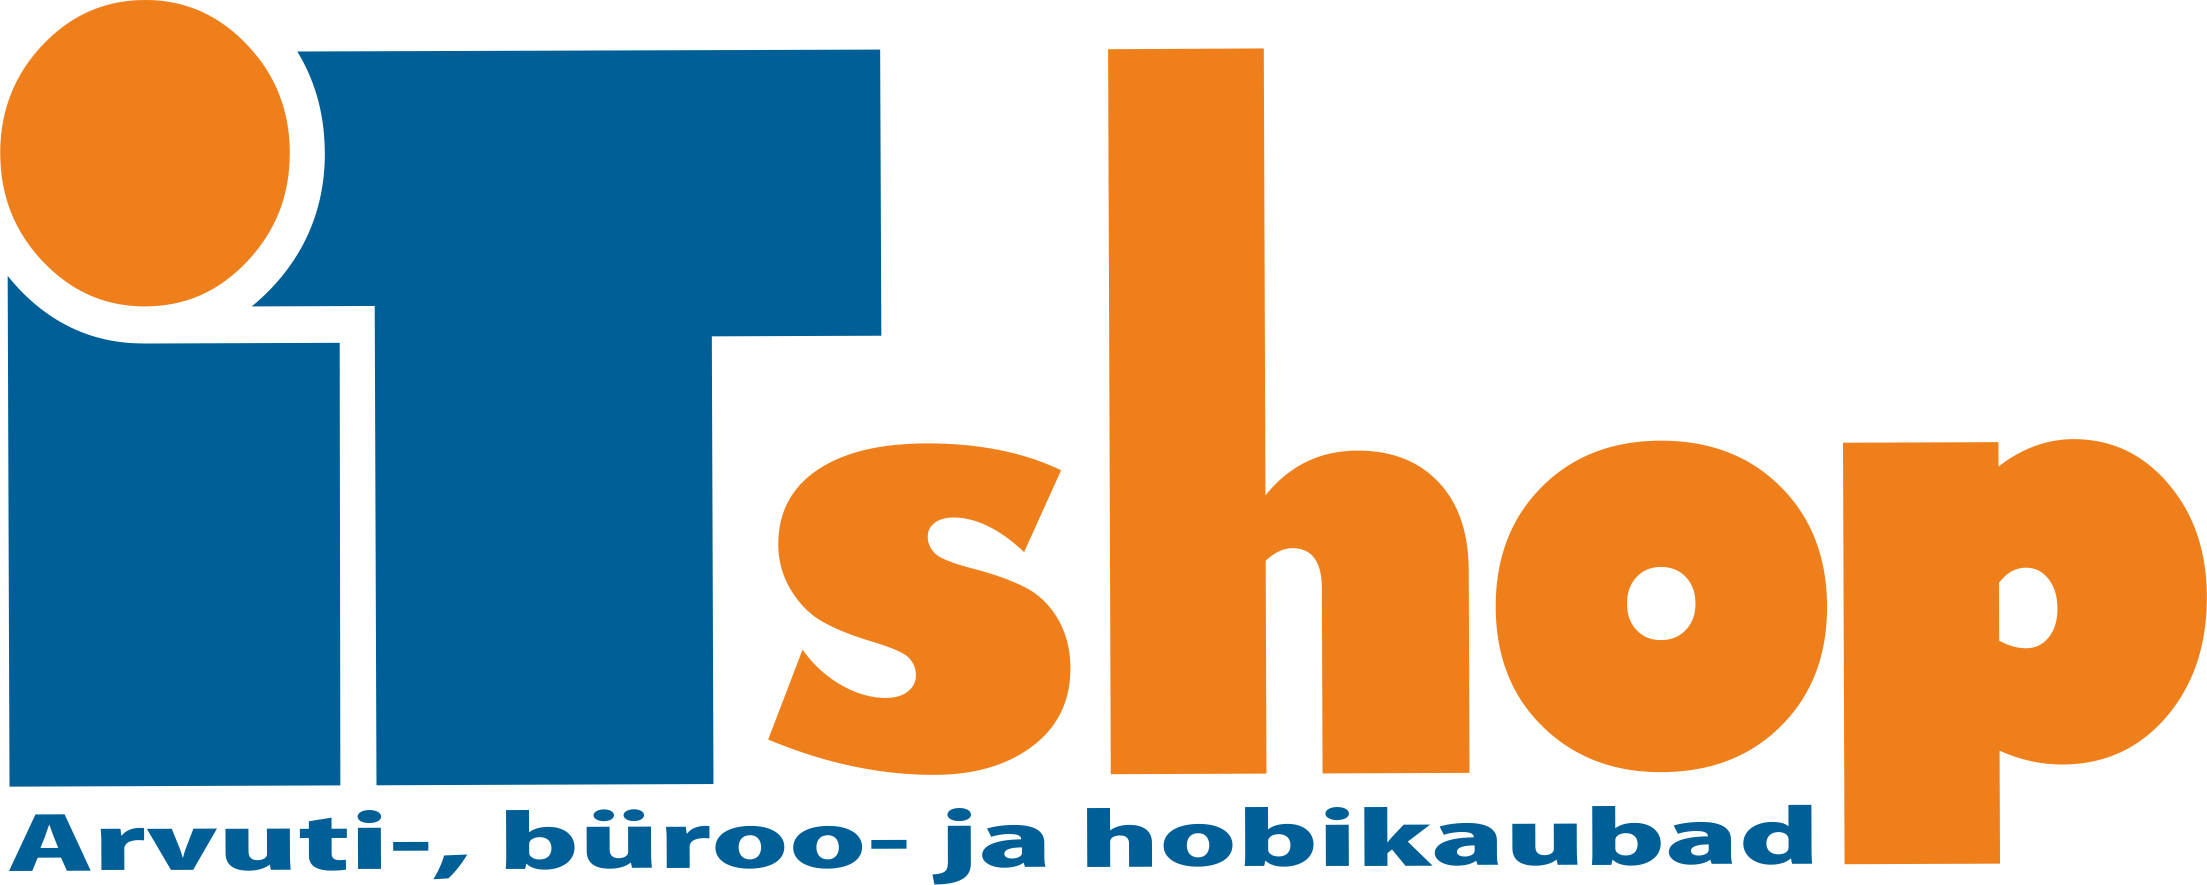 ITshop logo